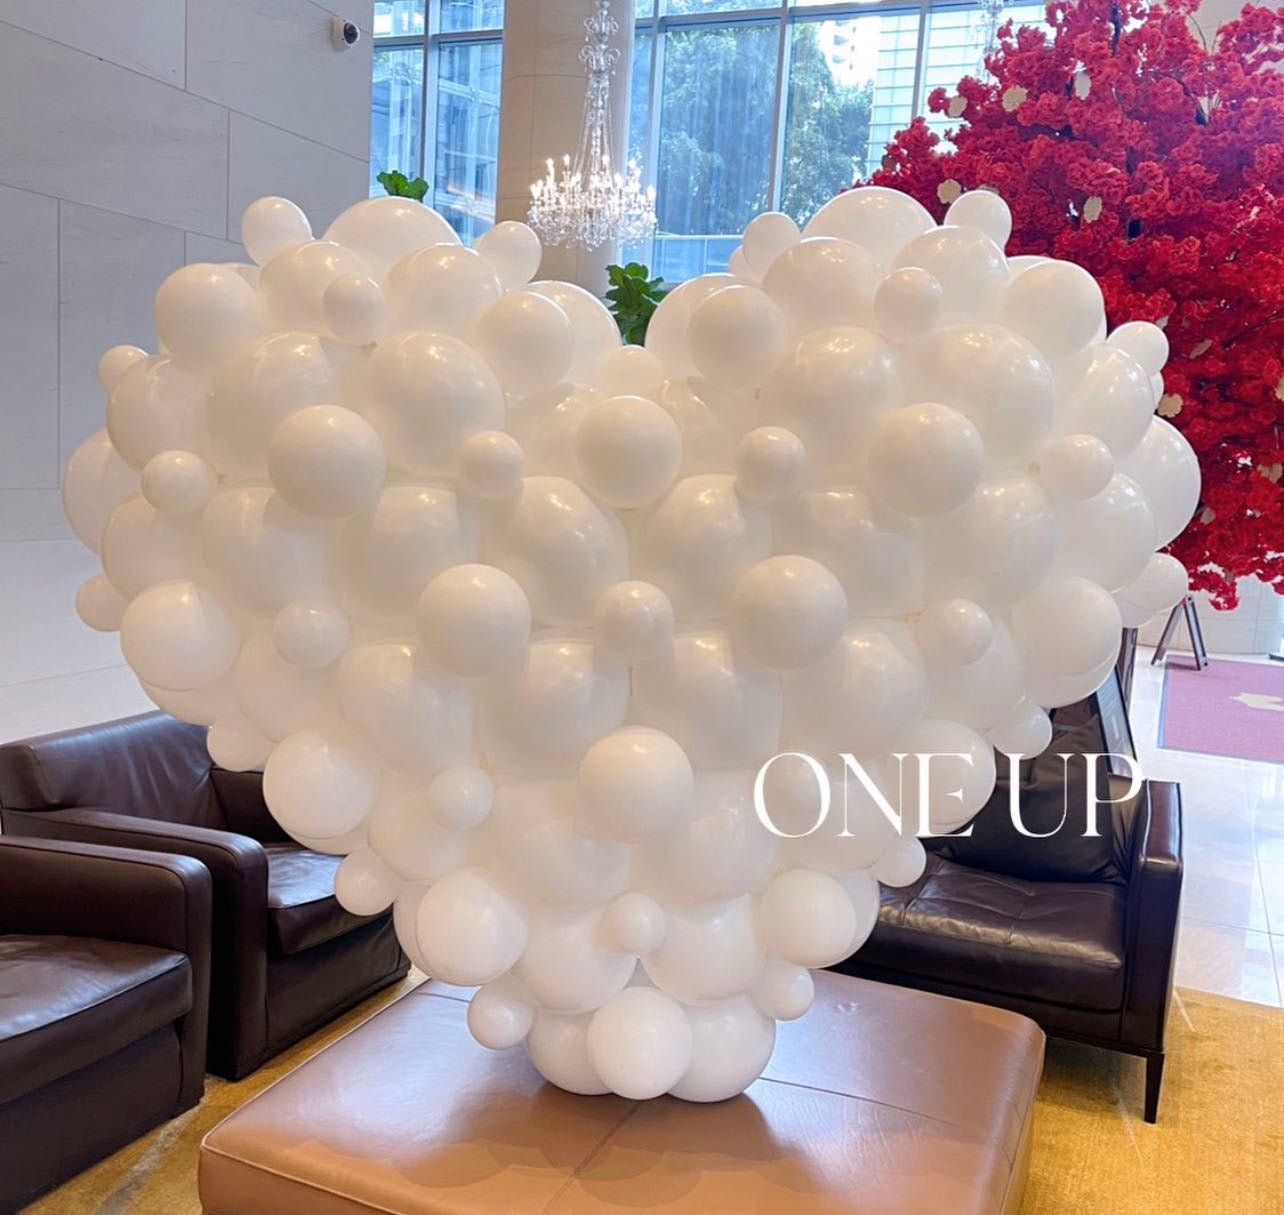 Giant white heart balloon